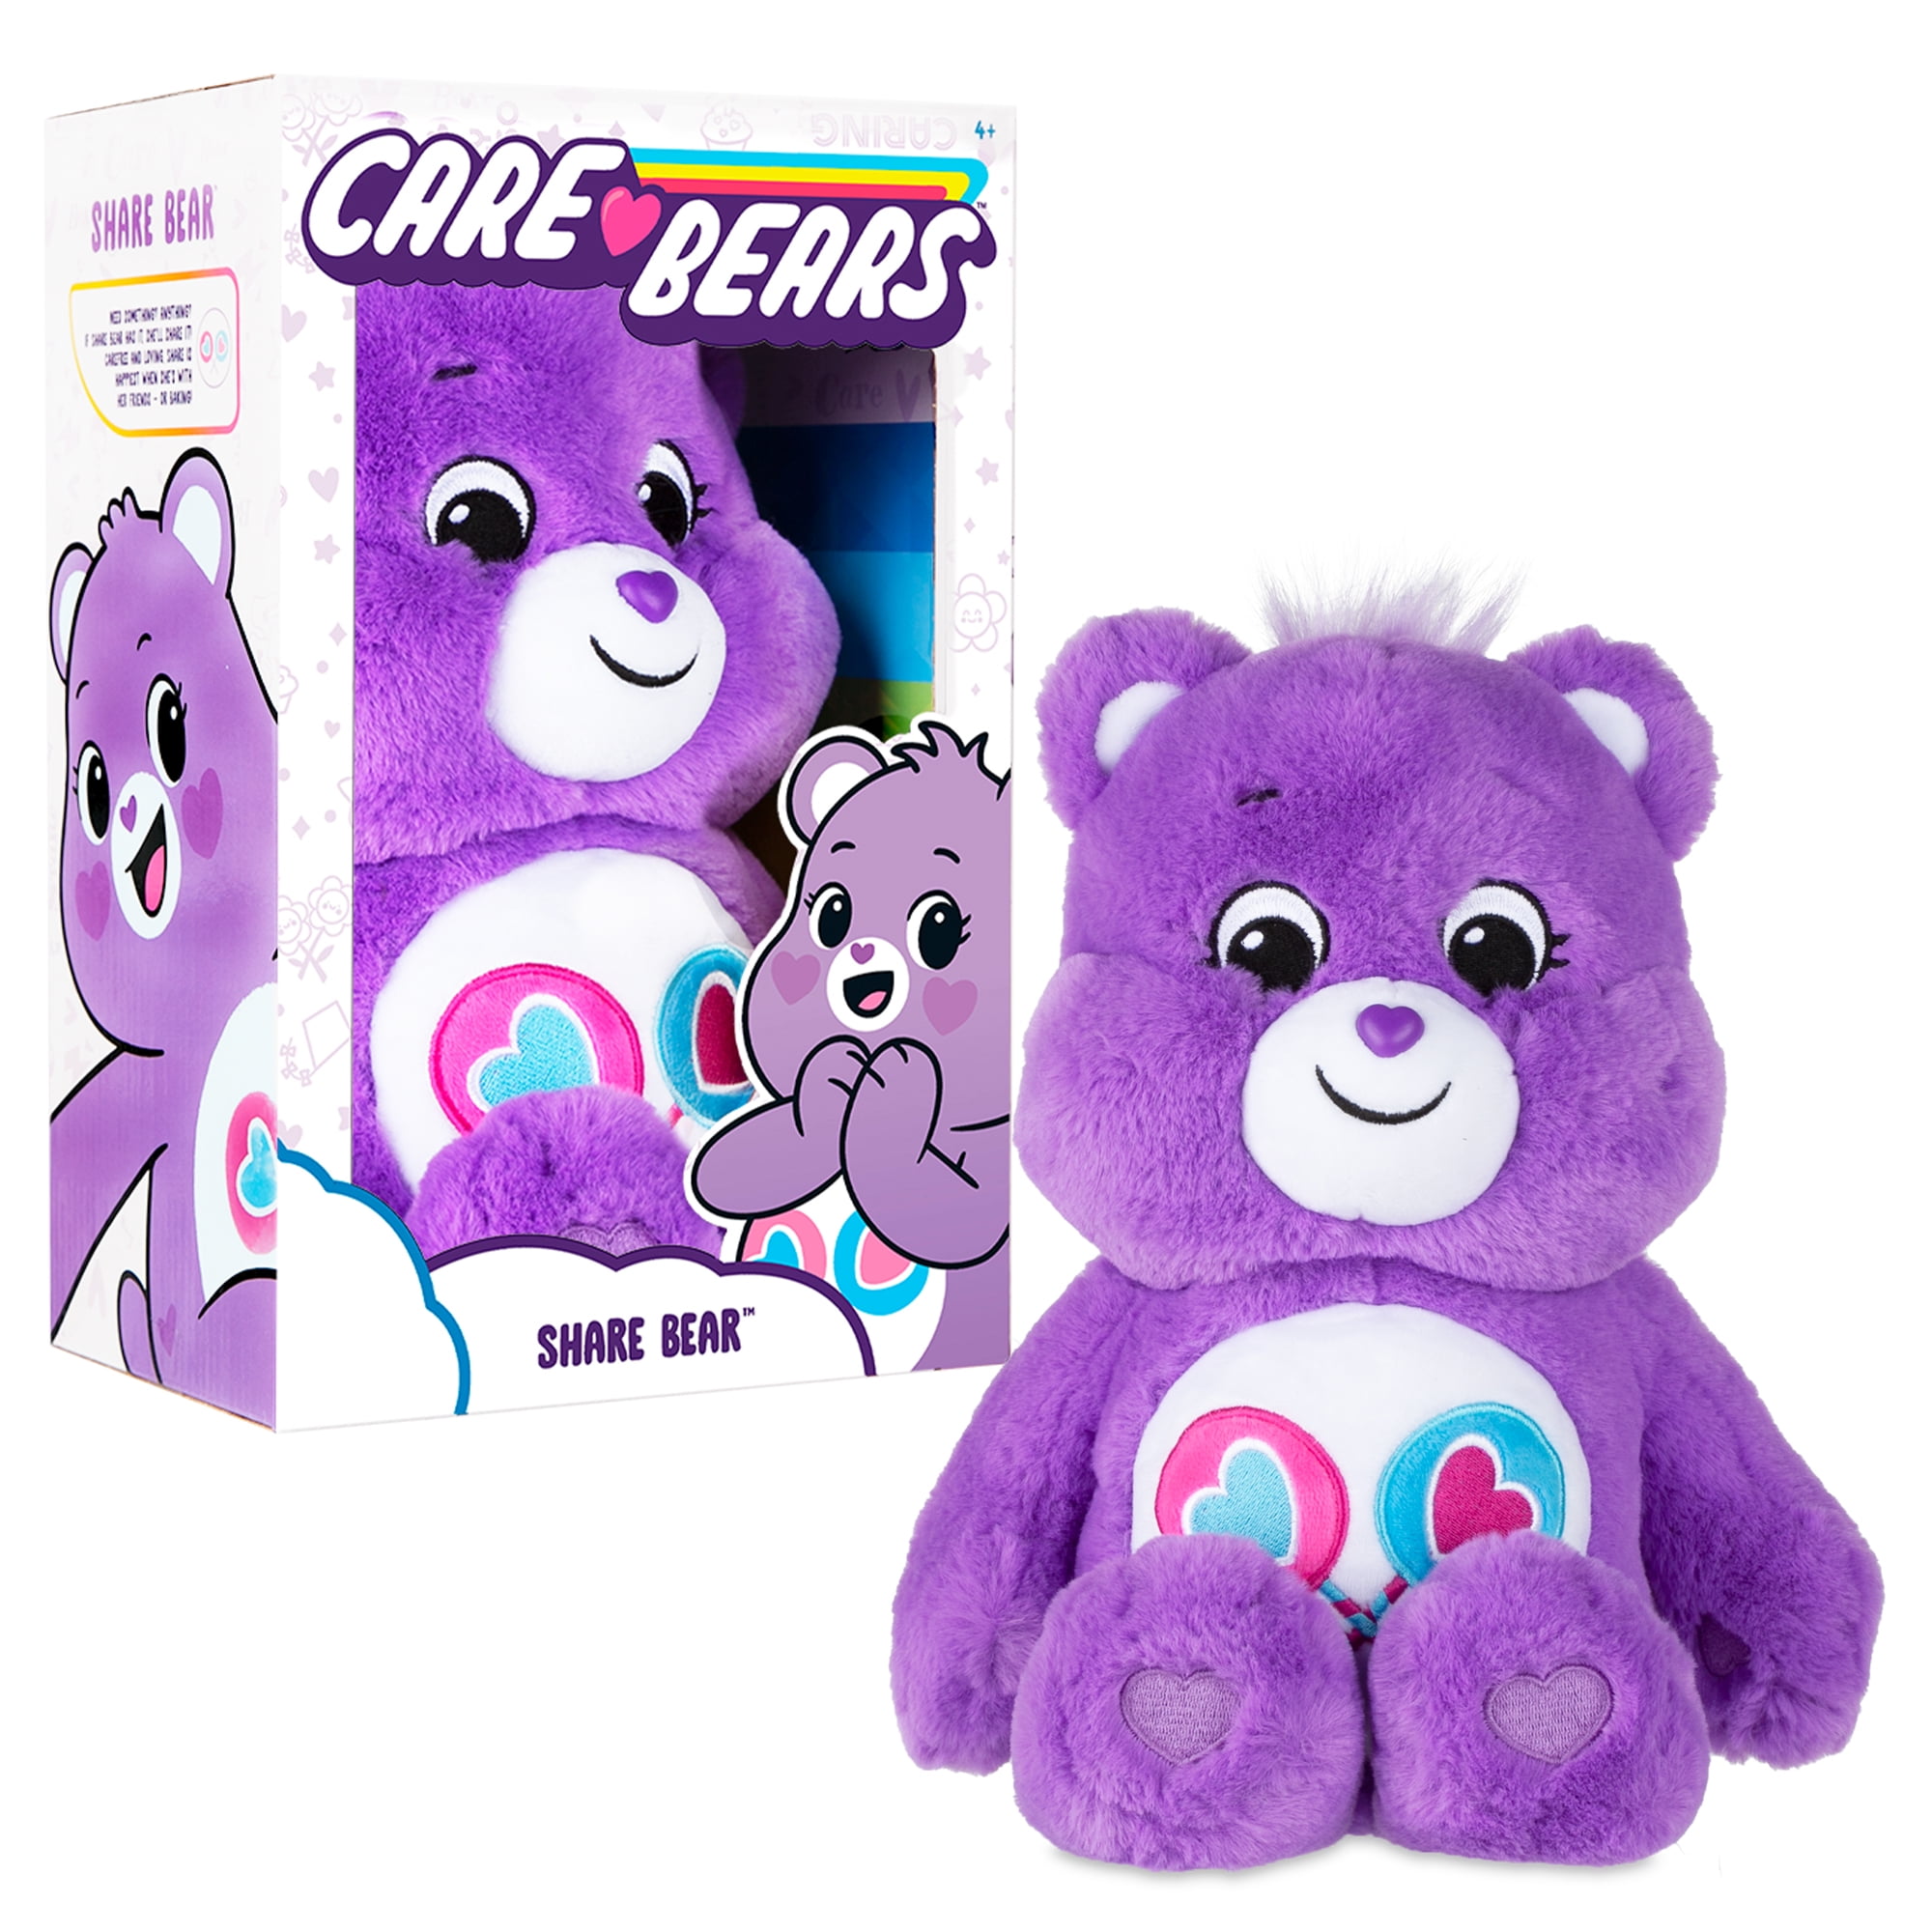 Customized graduation plush bear for her 2020 I love you gift Box Giraffe 12" 